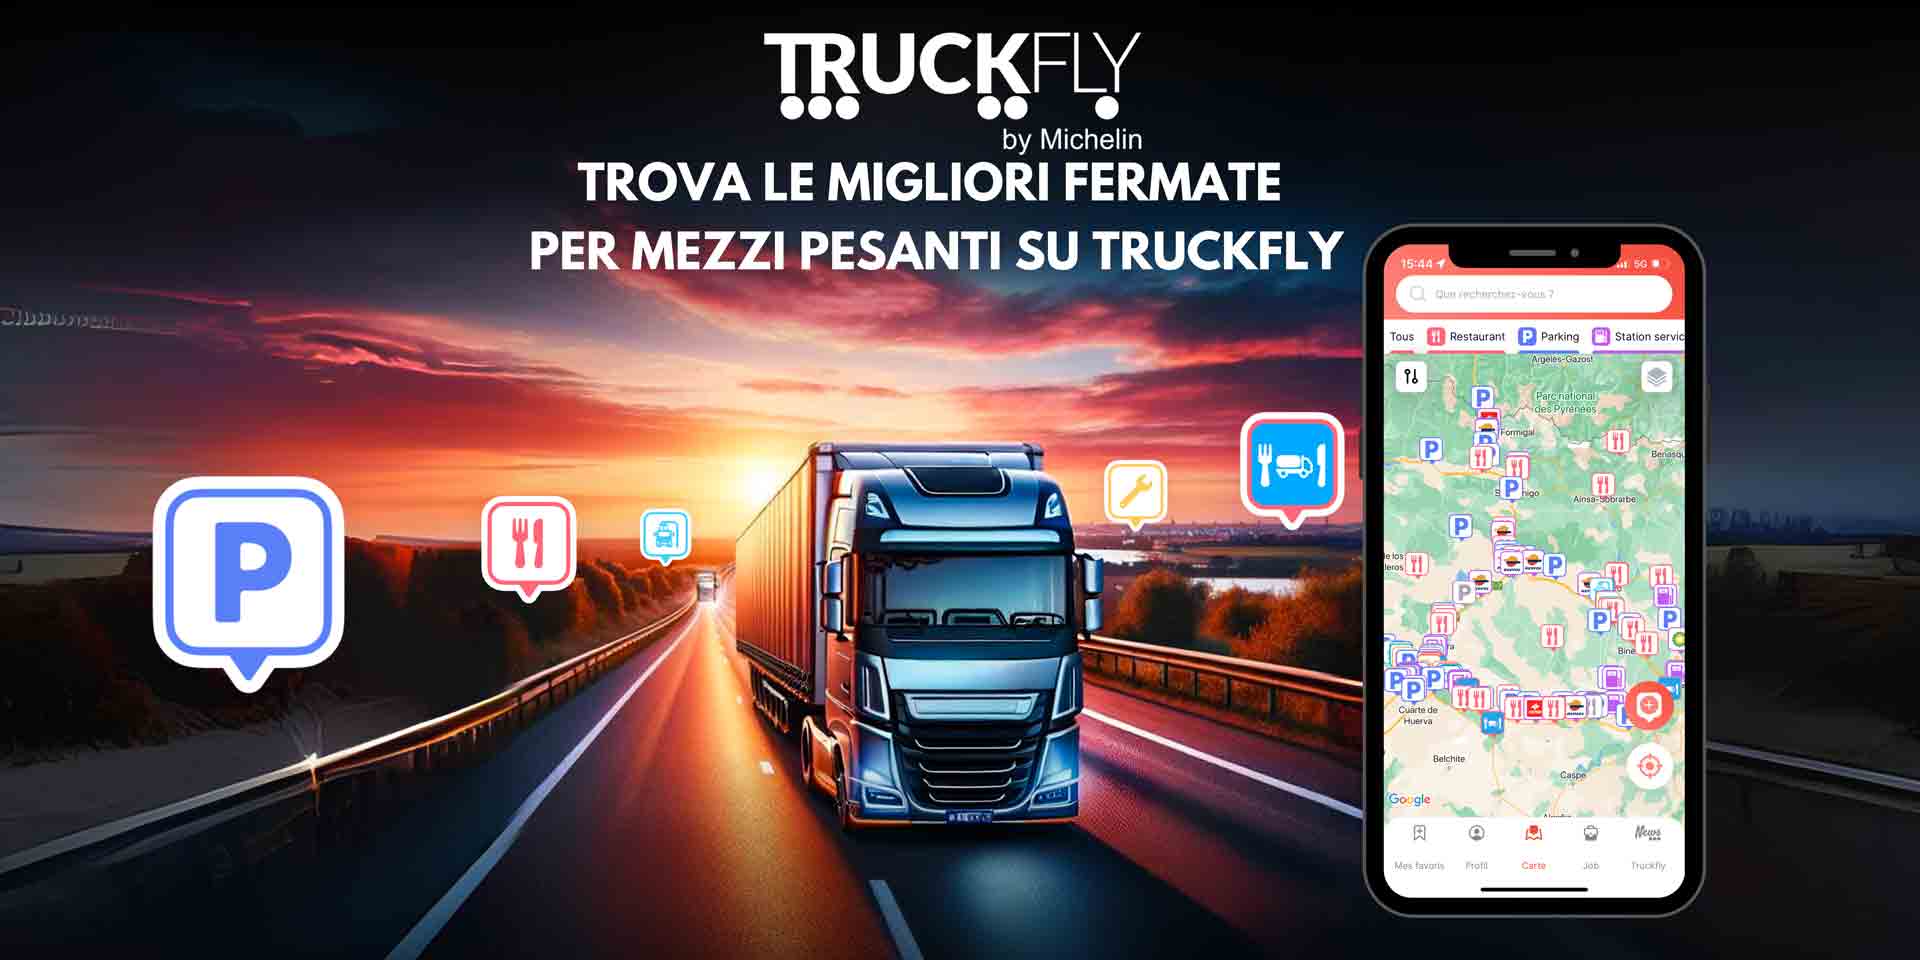 Truckfly by Michelin, l’app che aiuta i conducenti di veicoli pesanti a trovare aree di sosta e servizi